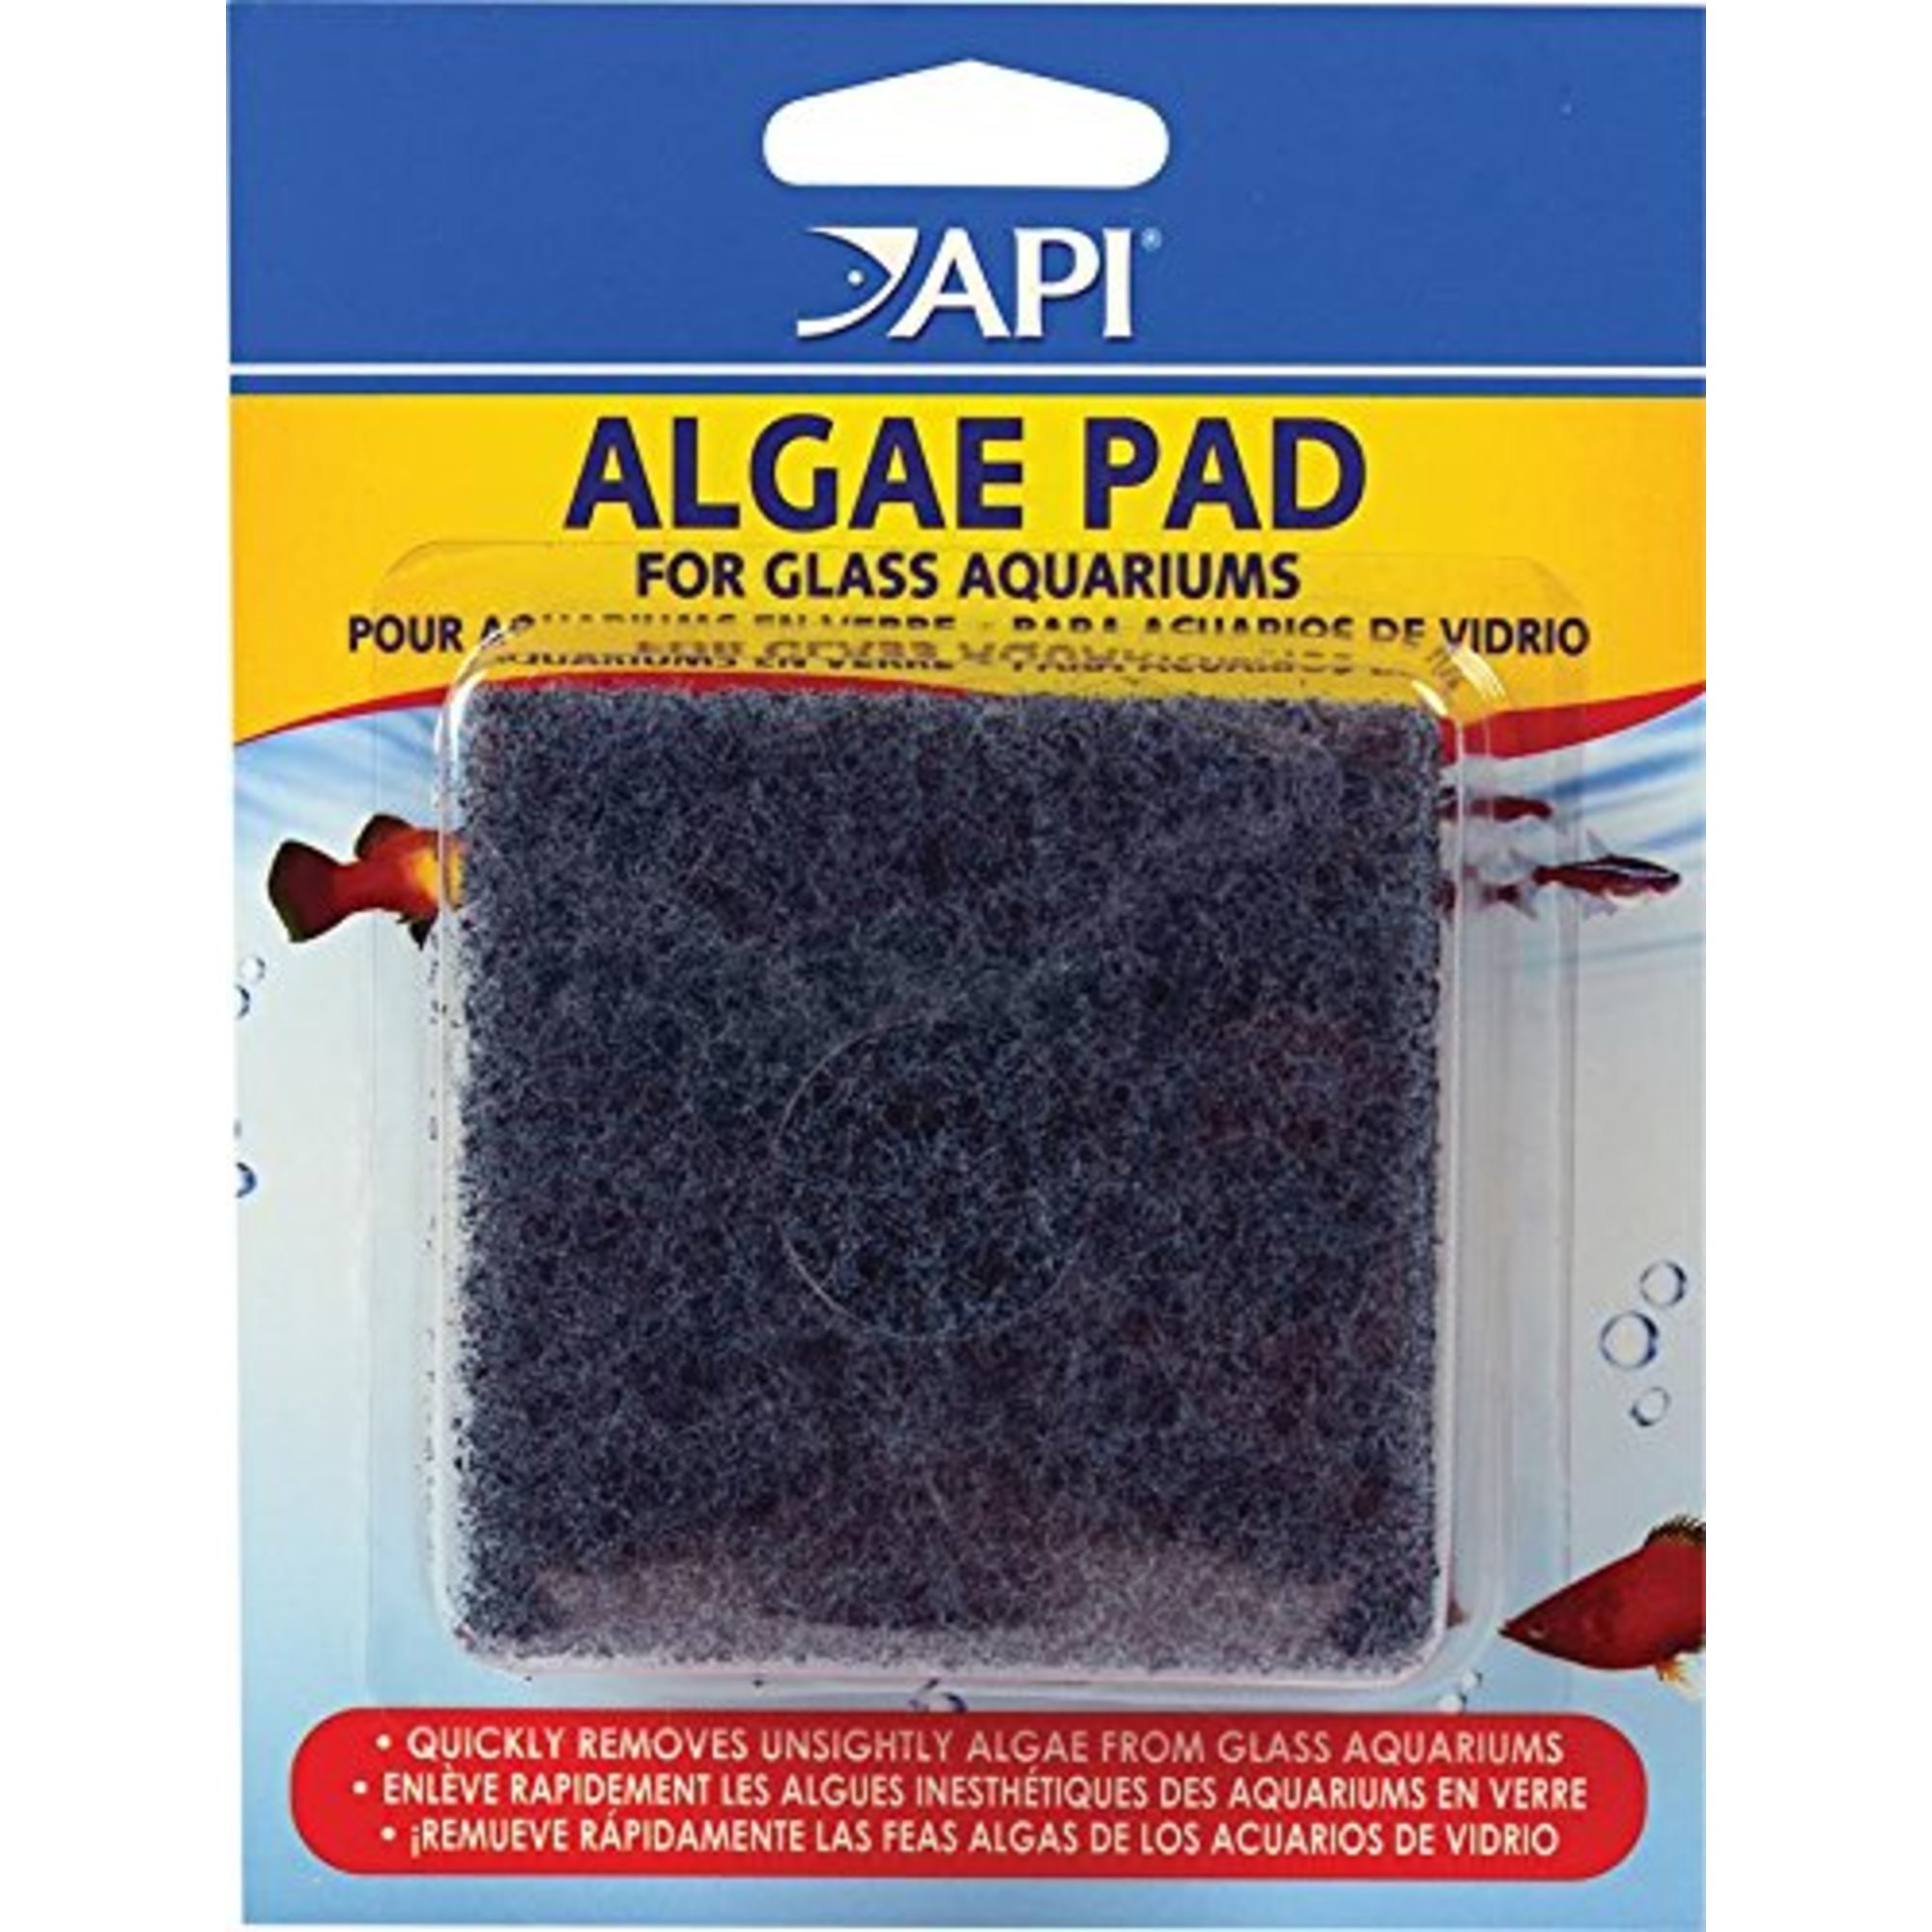 api-algae-pad-for-glass